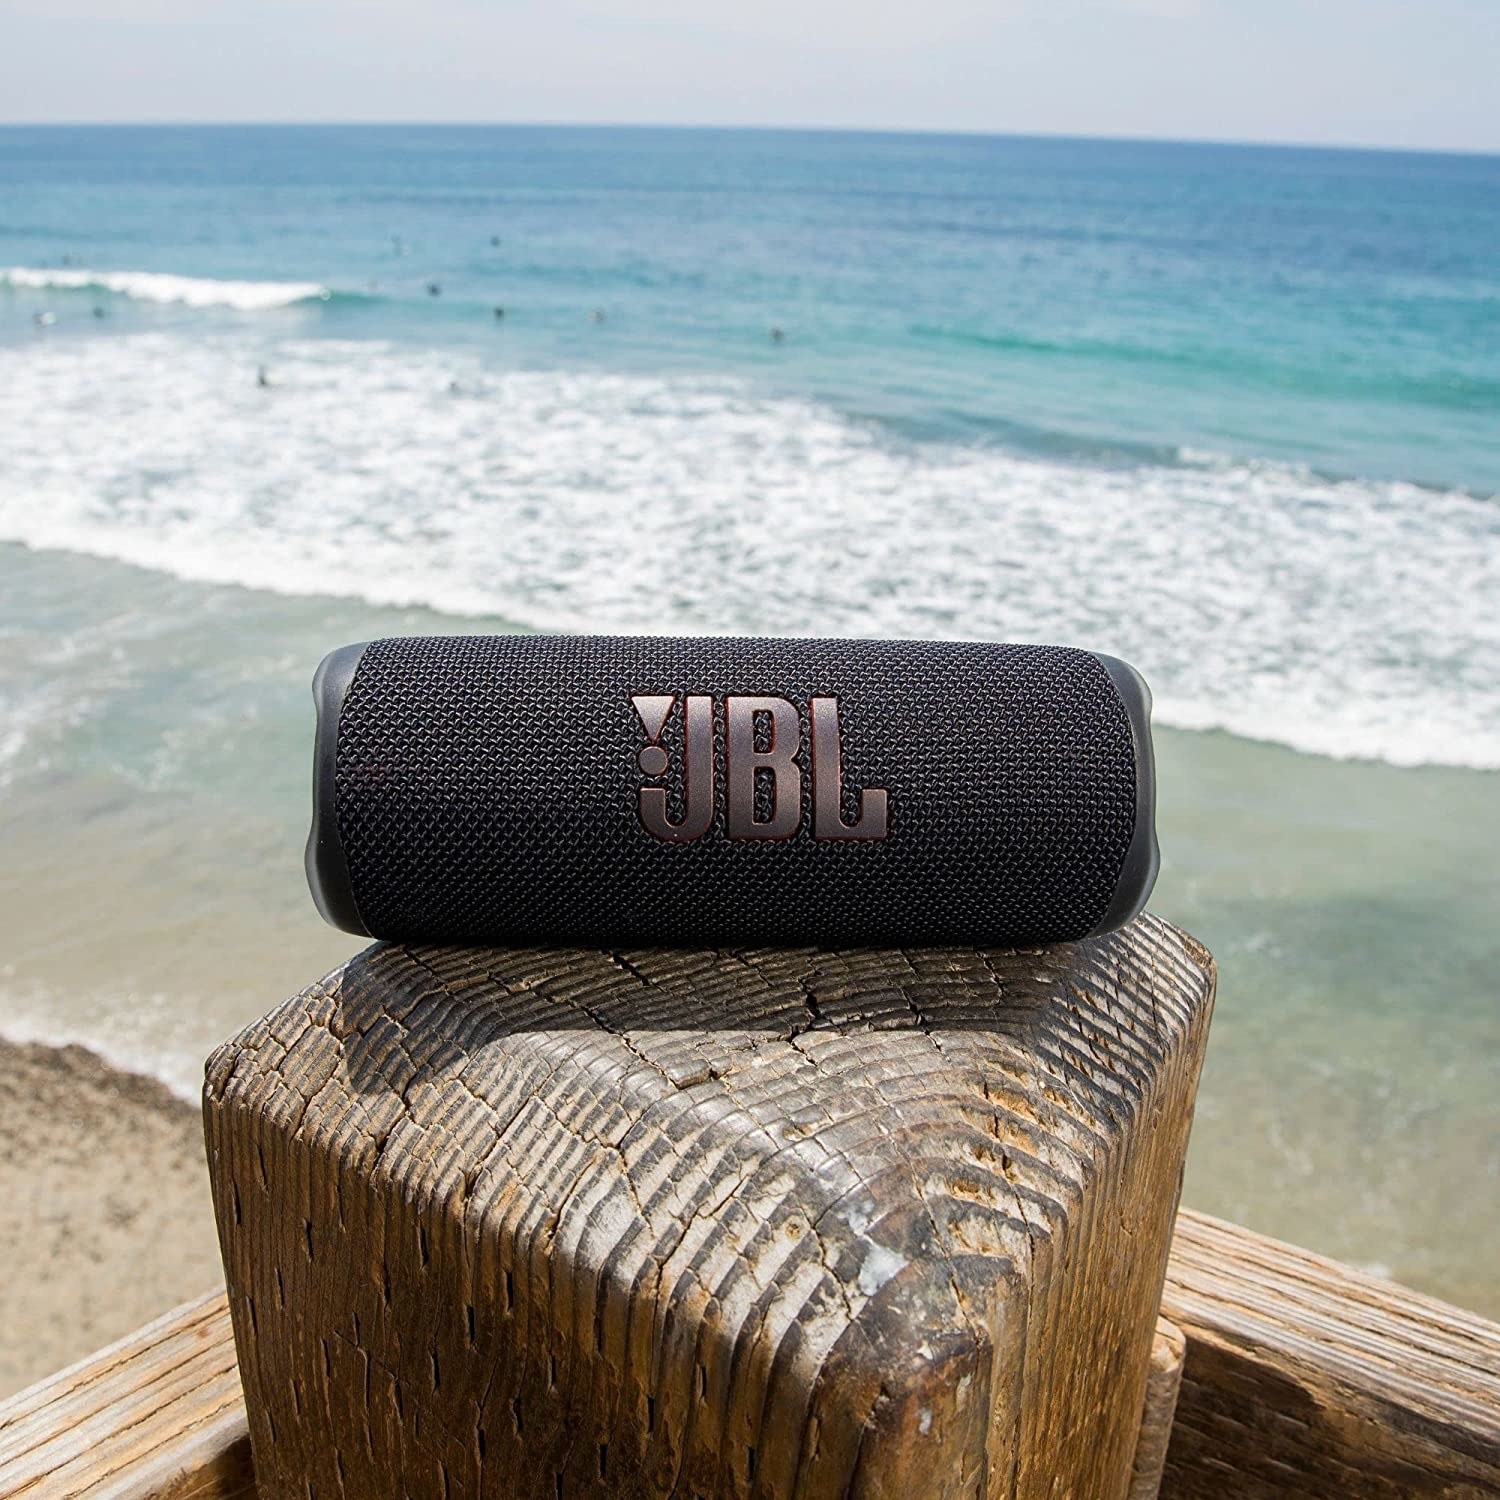 a JBL speaker on a beach